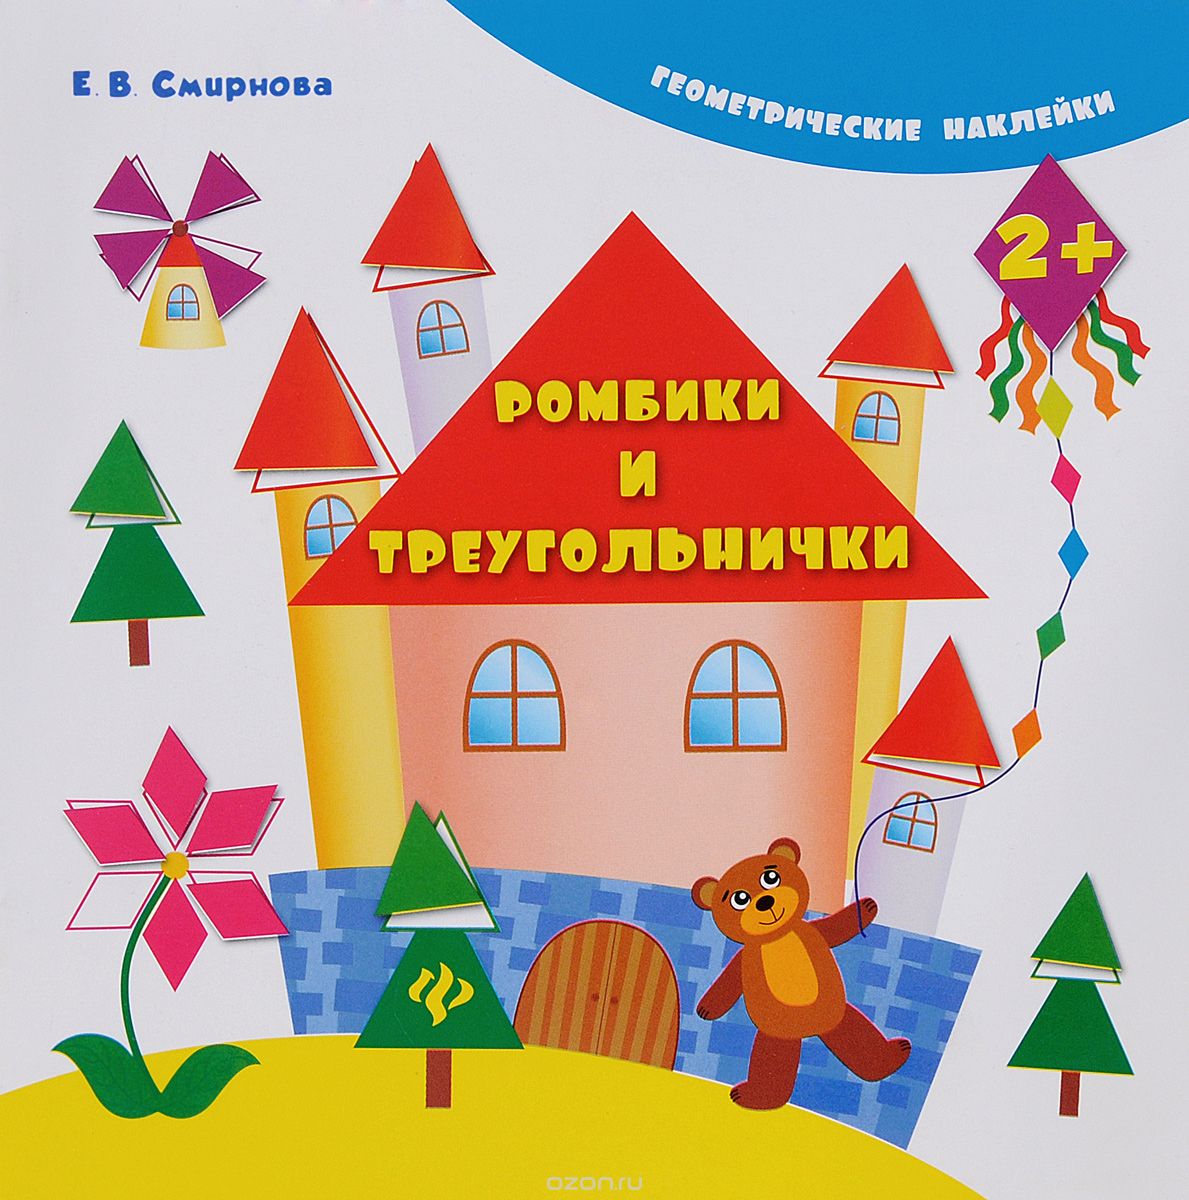 Скачать книгу "Ромбики и треугольнички (+ наклейки), Е. В. Смирнова"